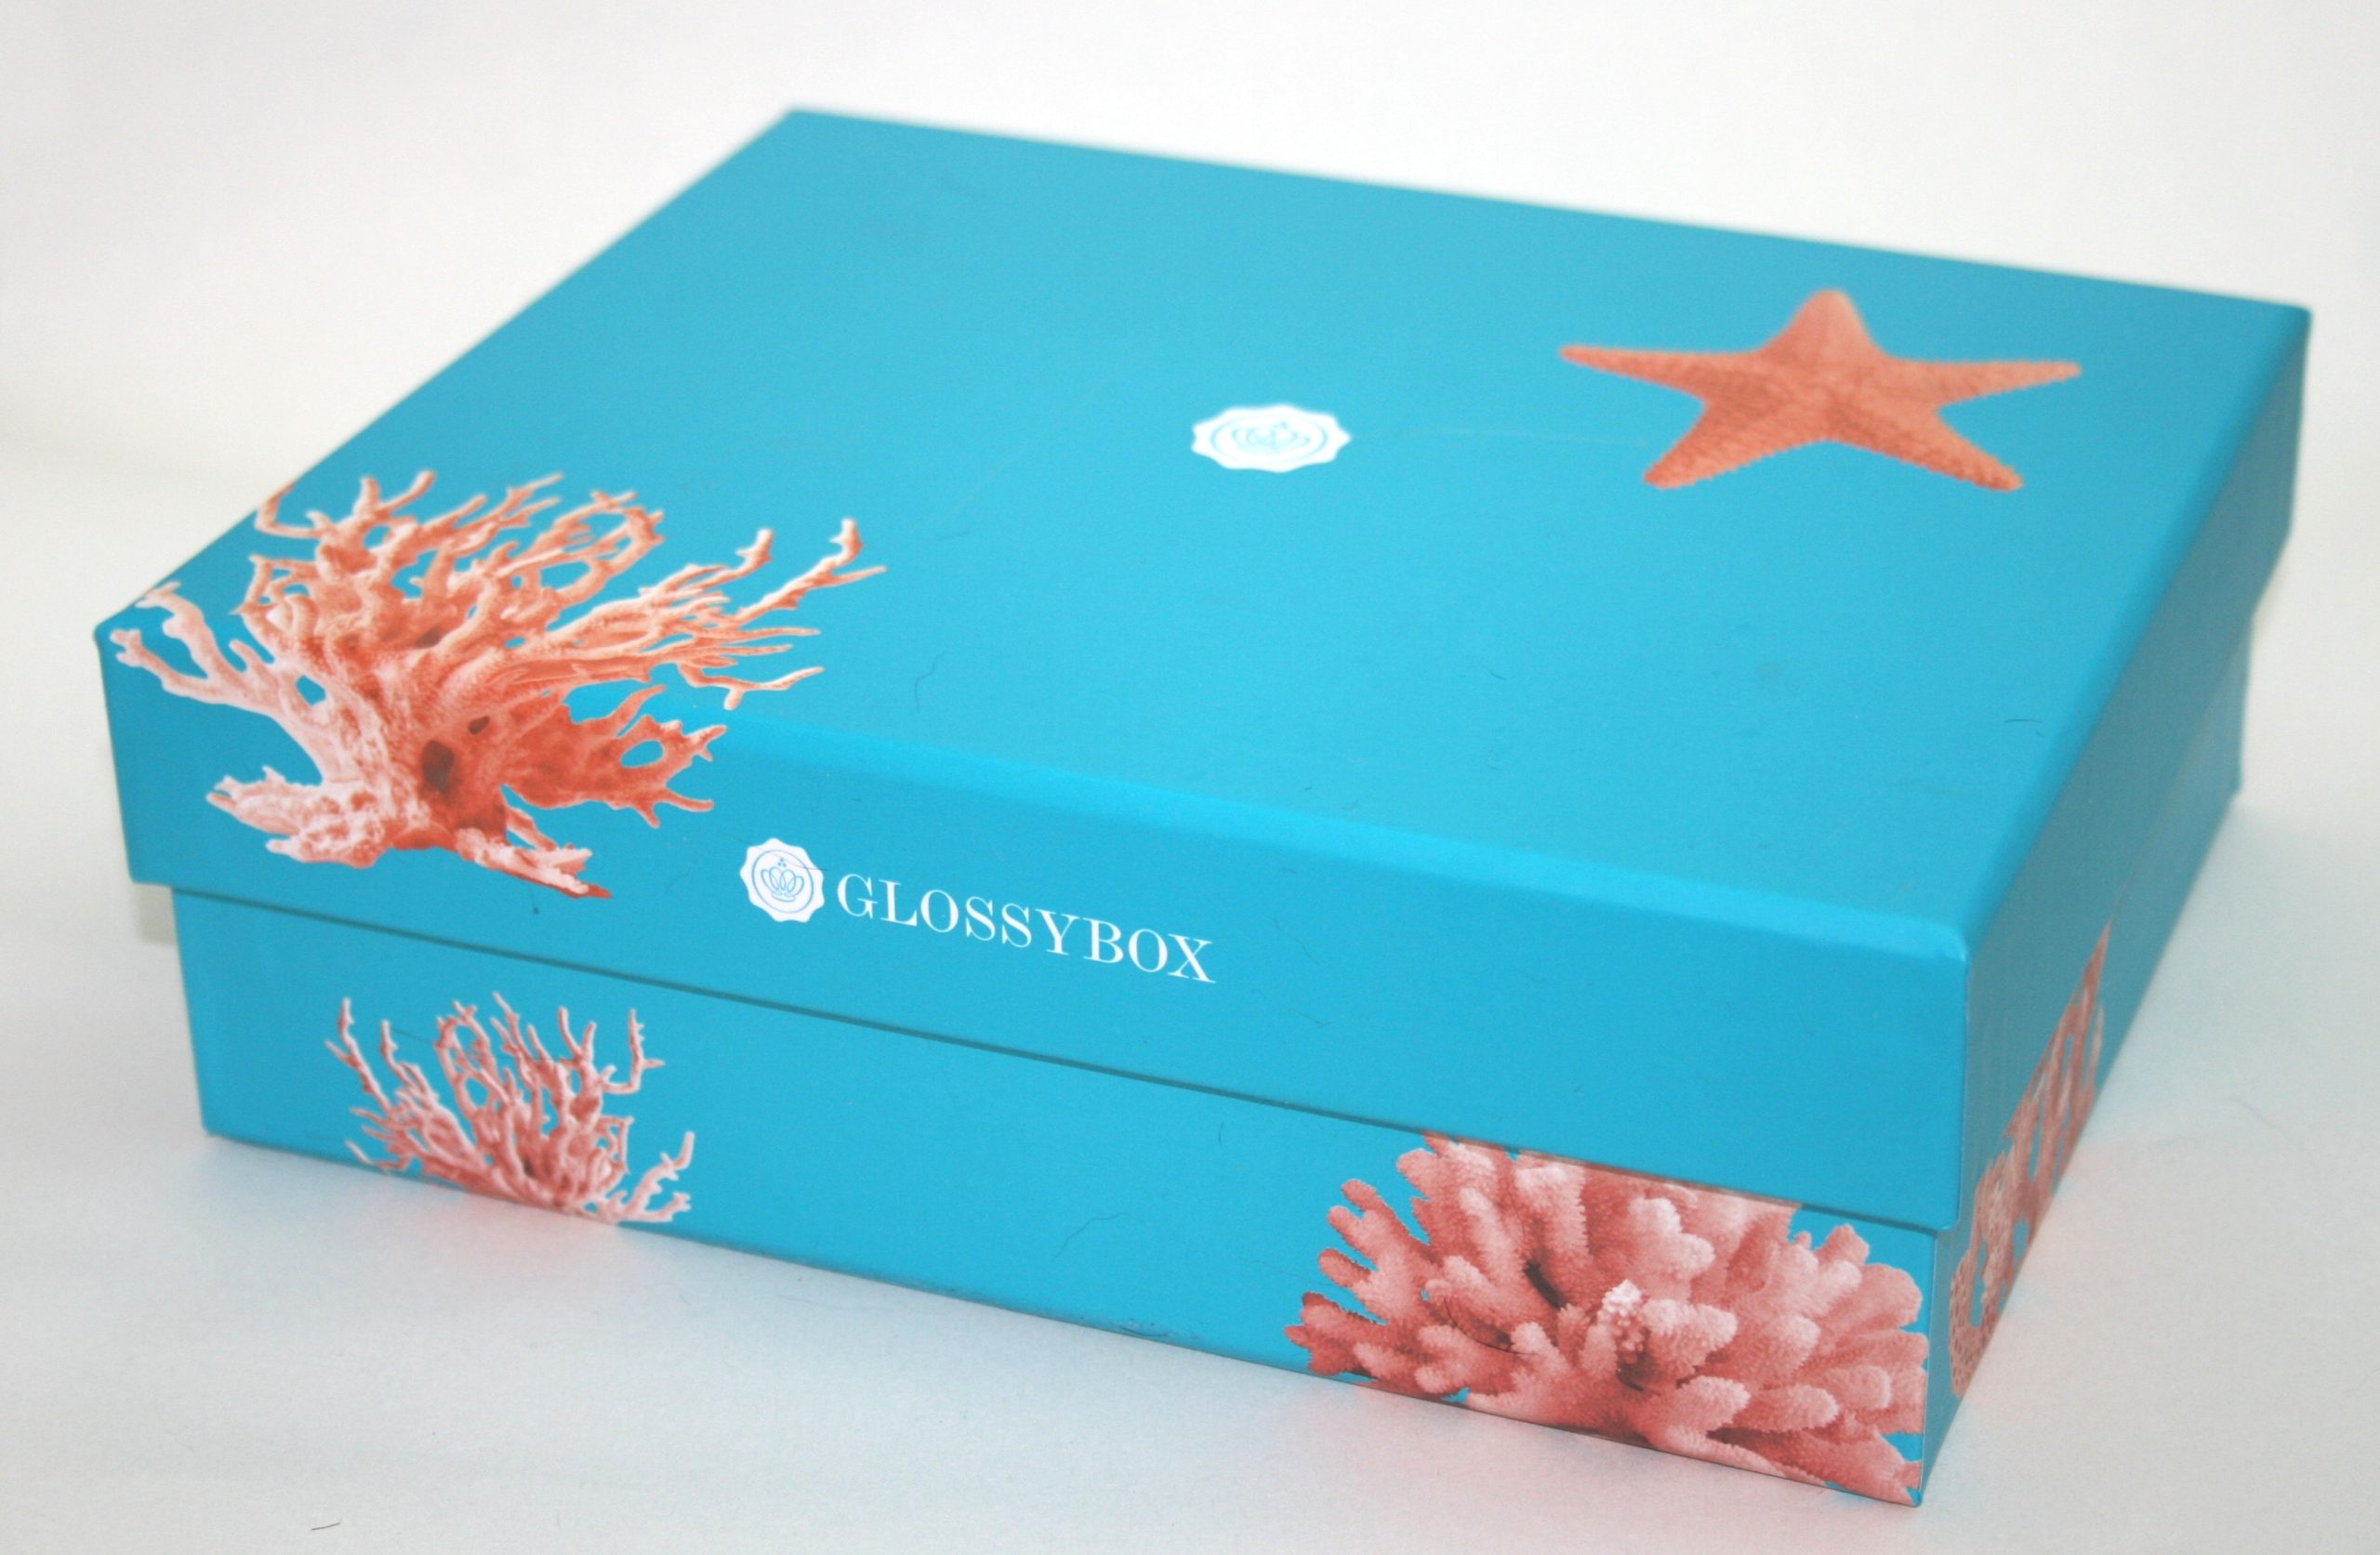 Glossybox July 2013